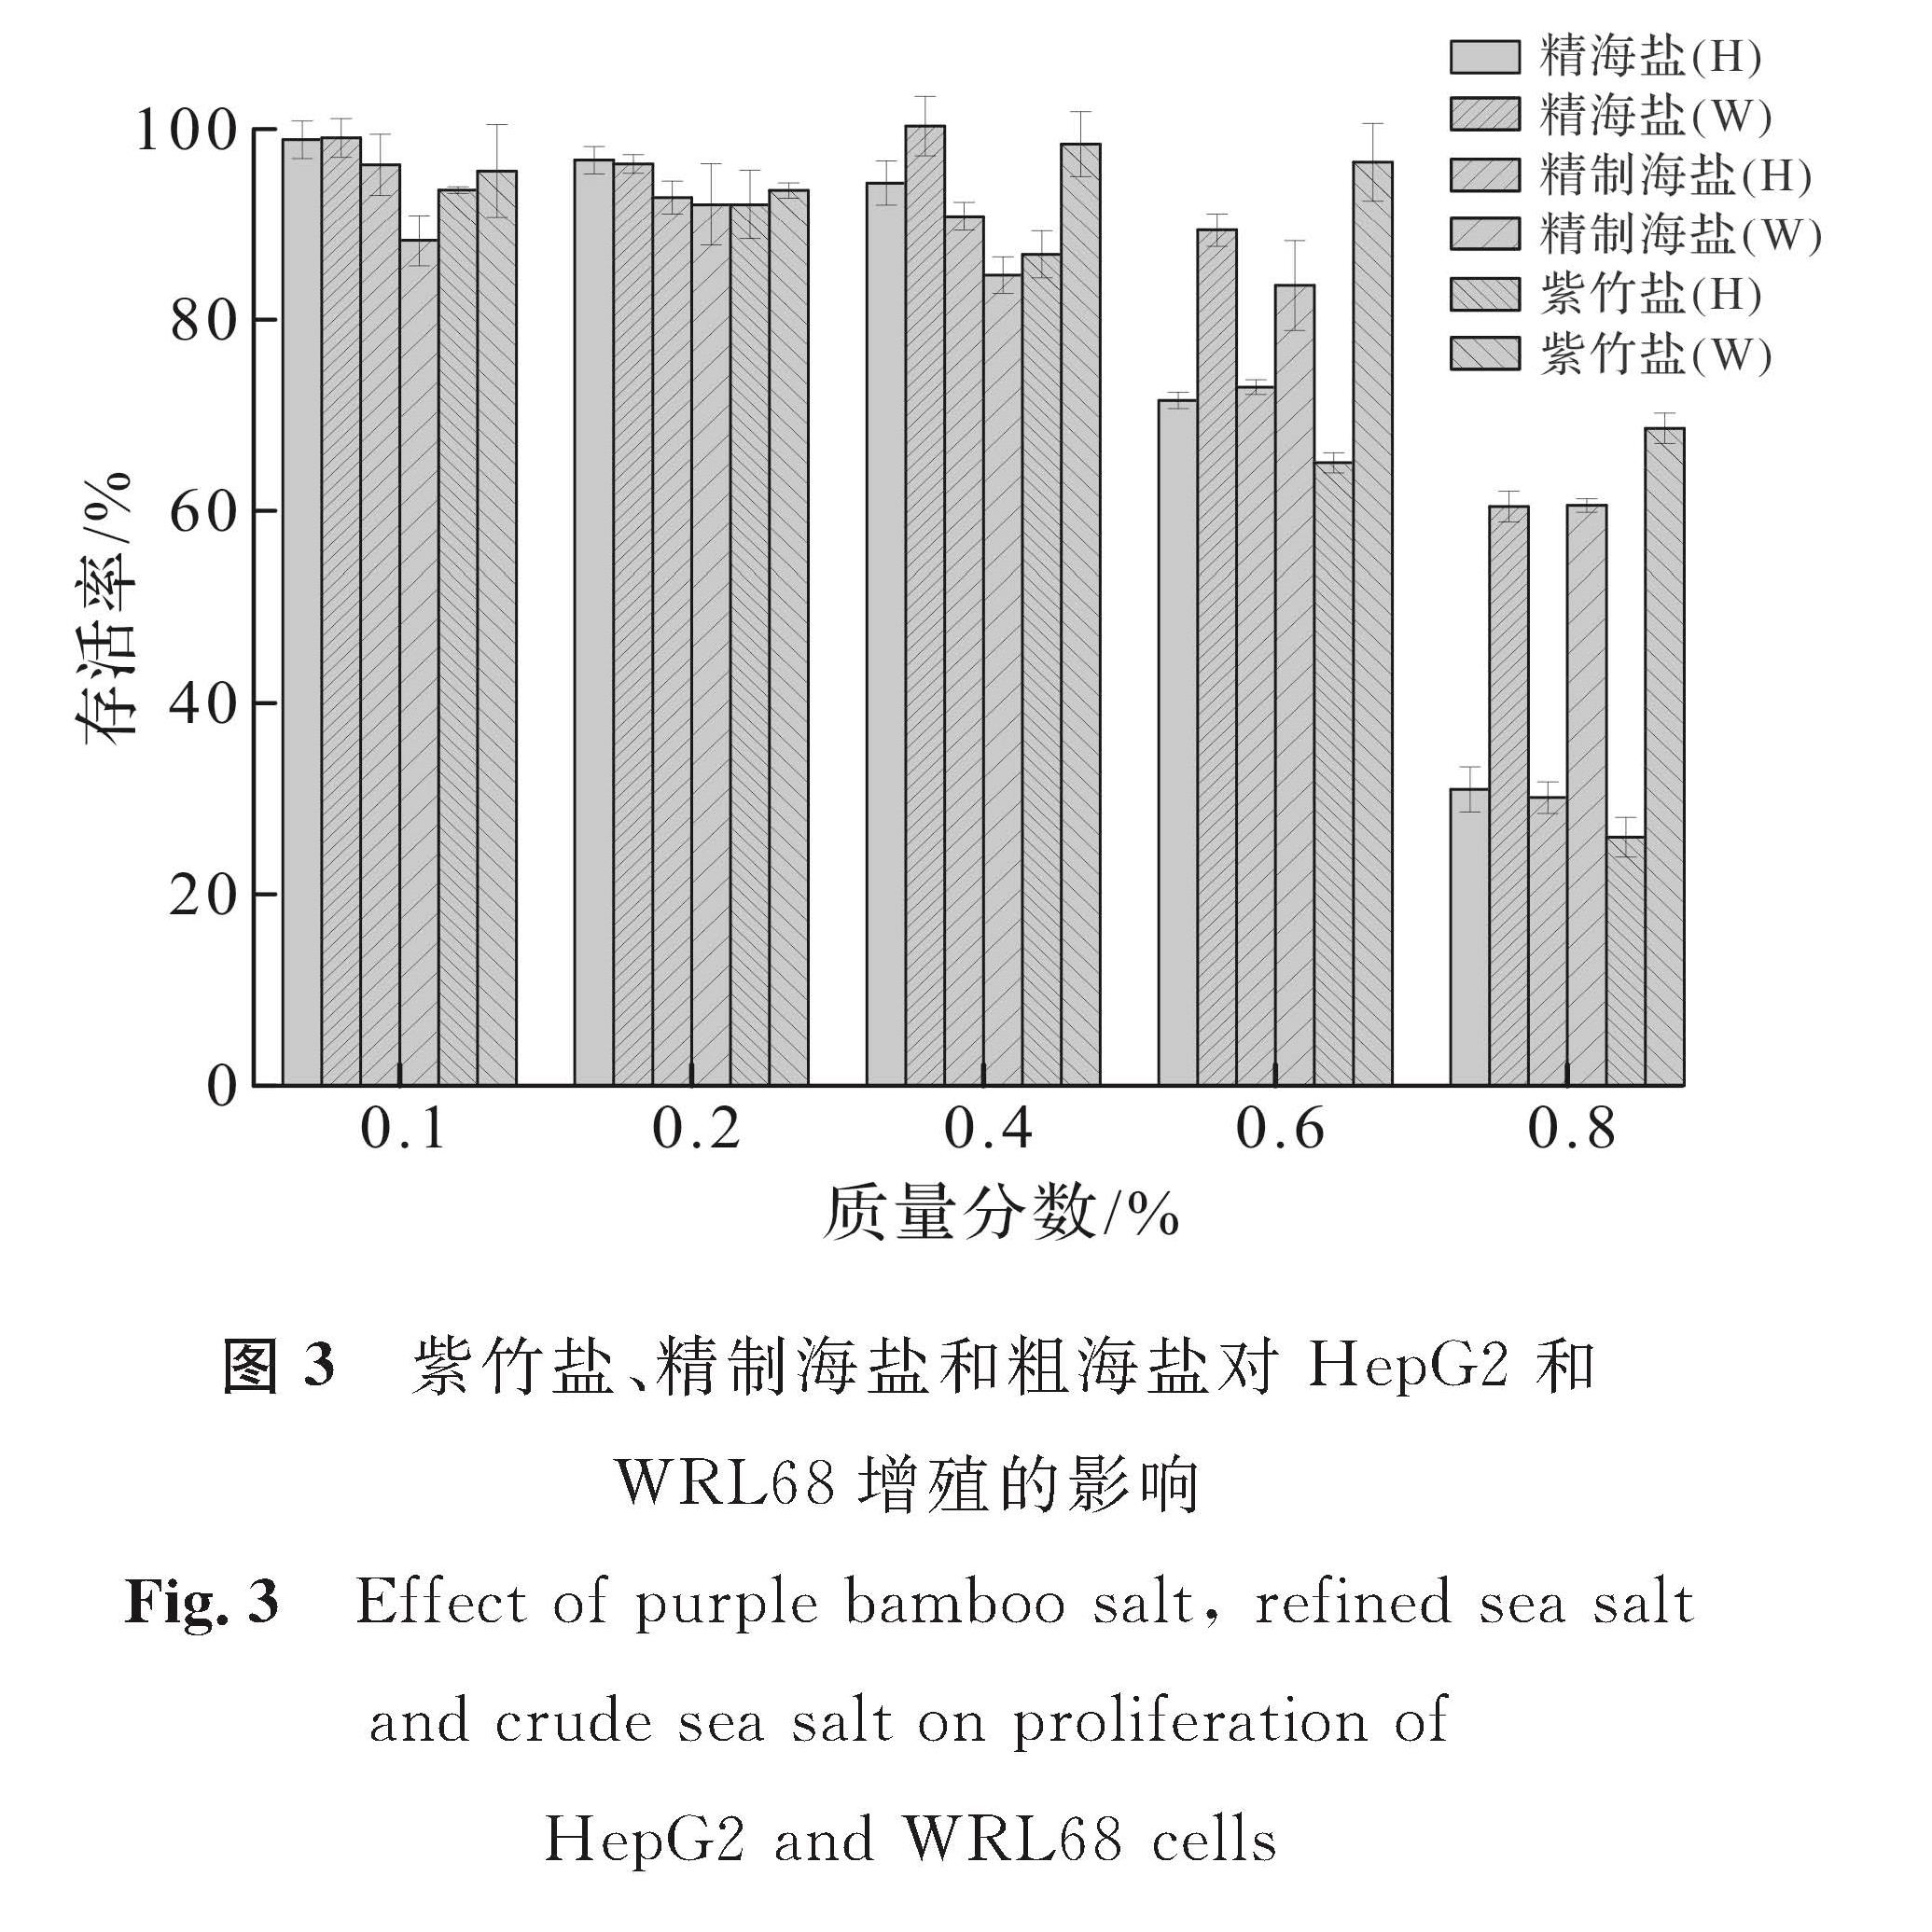 图3 紫竹盐、精制海盐和粗海盐对HepG2和WRL68增殖的影响<br/>Fig.3 Effect of purple bamboo salt, refined sea salt and crude sea salt on proliferation of HepG2 and WRL68 cells